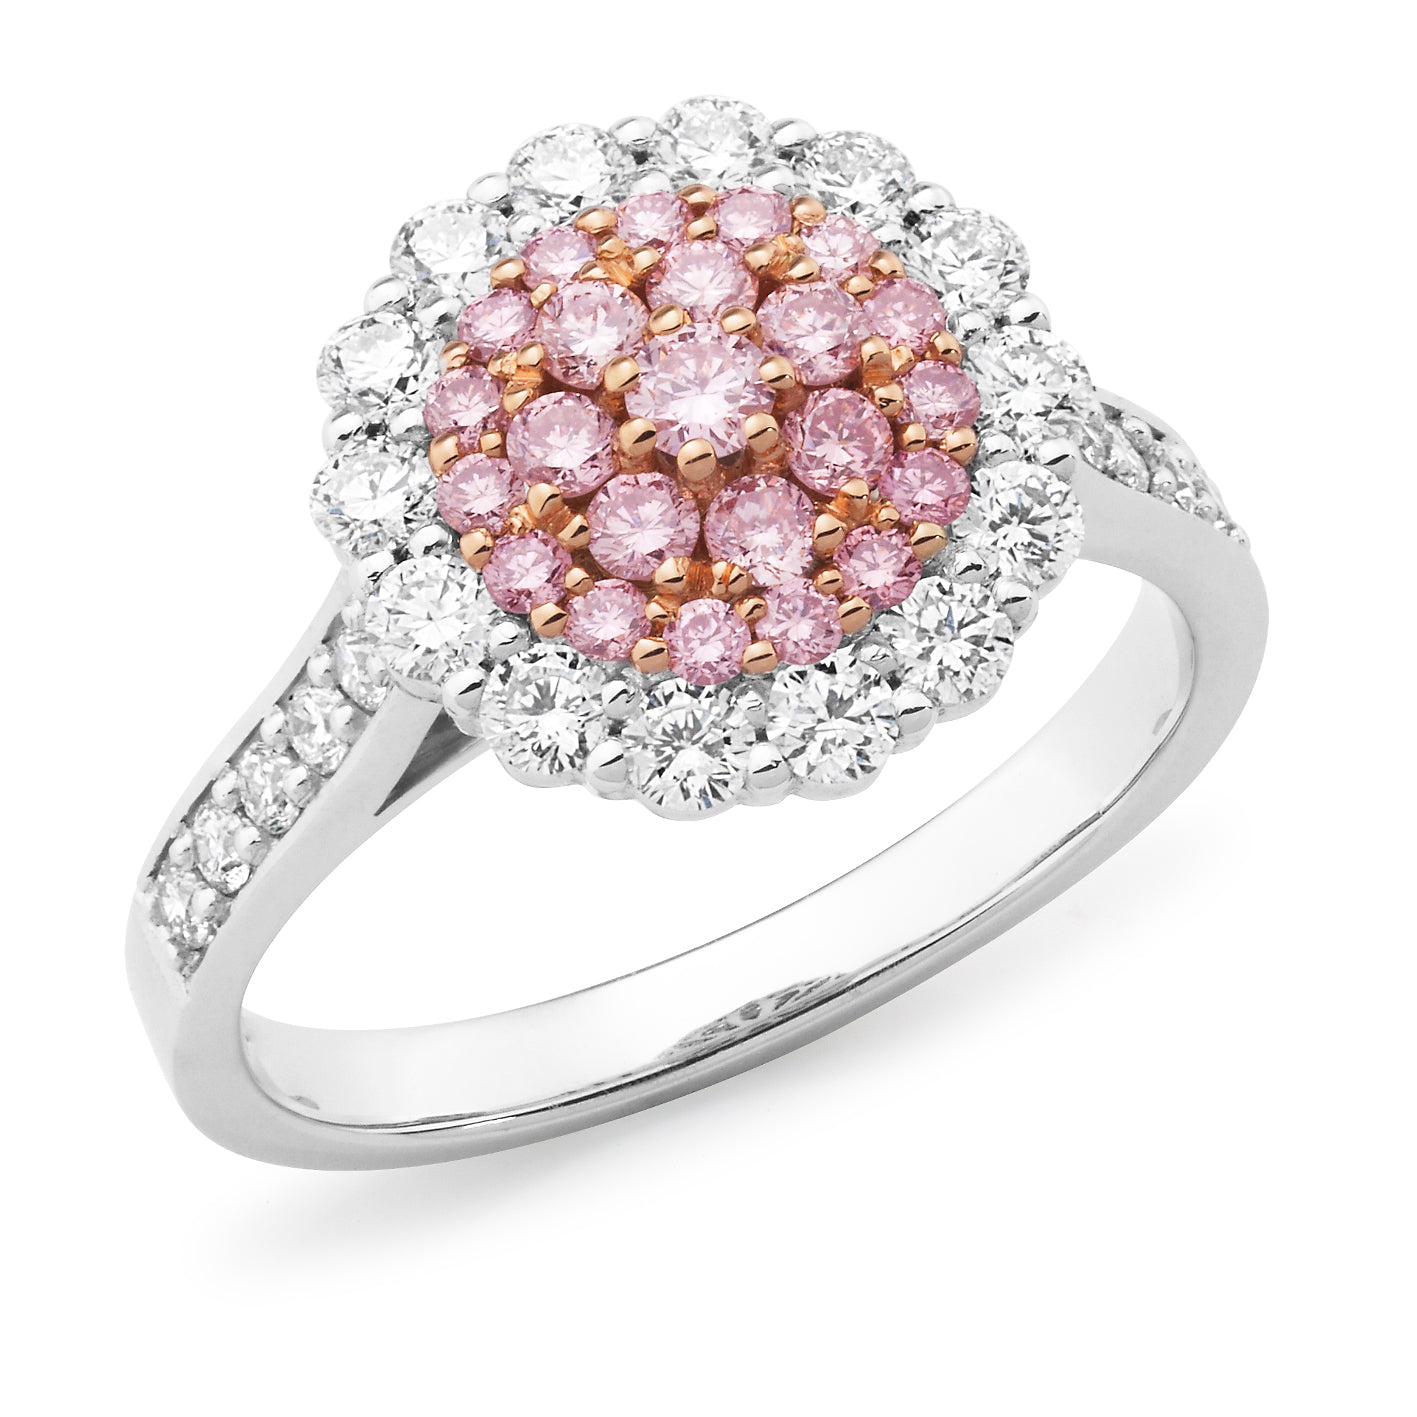 Australian 0.51ct Pink Diamond Ring in 18 Carat White & Rose Gold